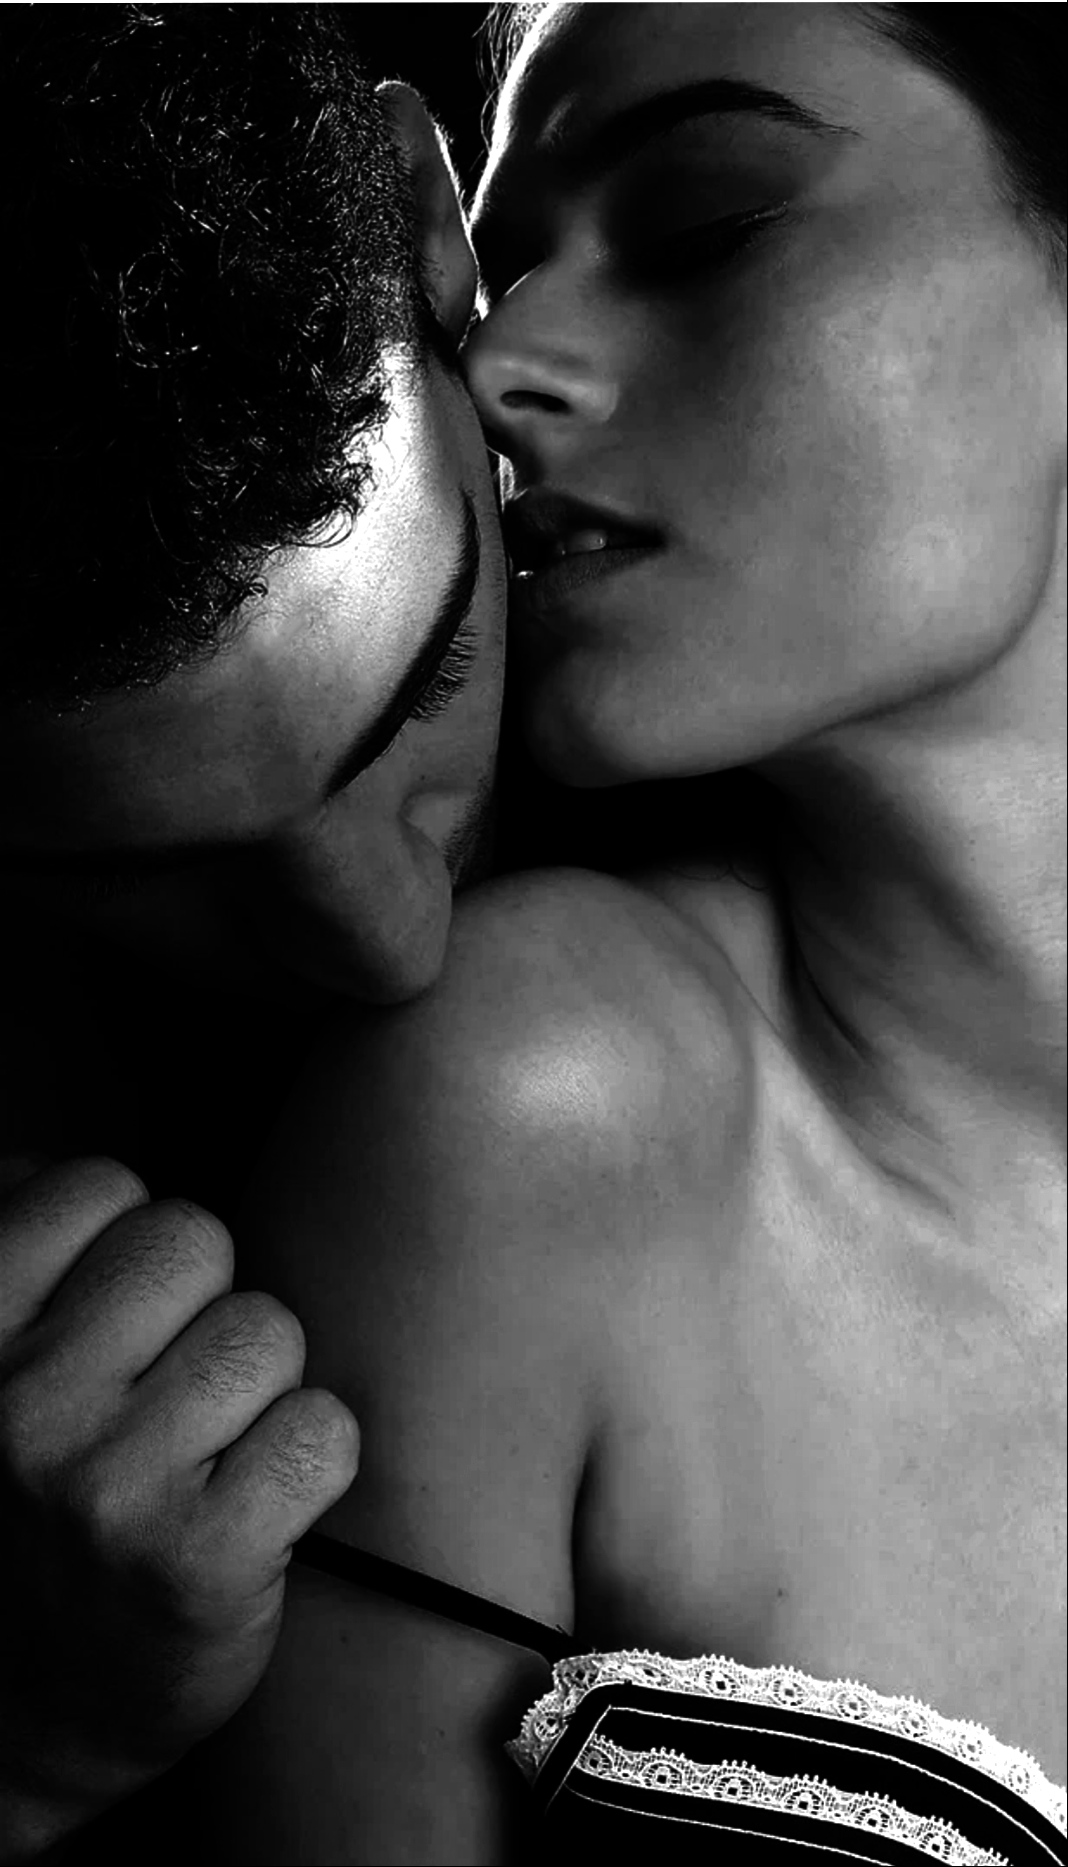 Красиво ласкает тело. Страсть. Страстный поцелуй. Нежная страсть. Мужчина страстно целует женщину.